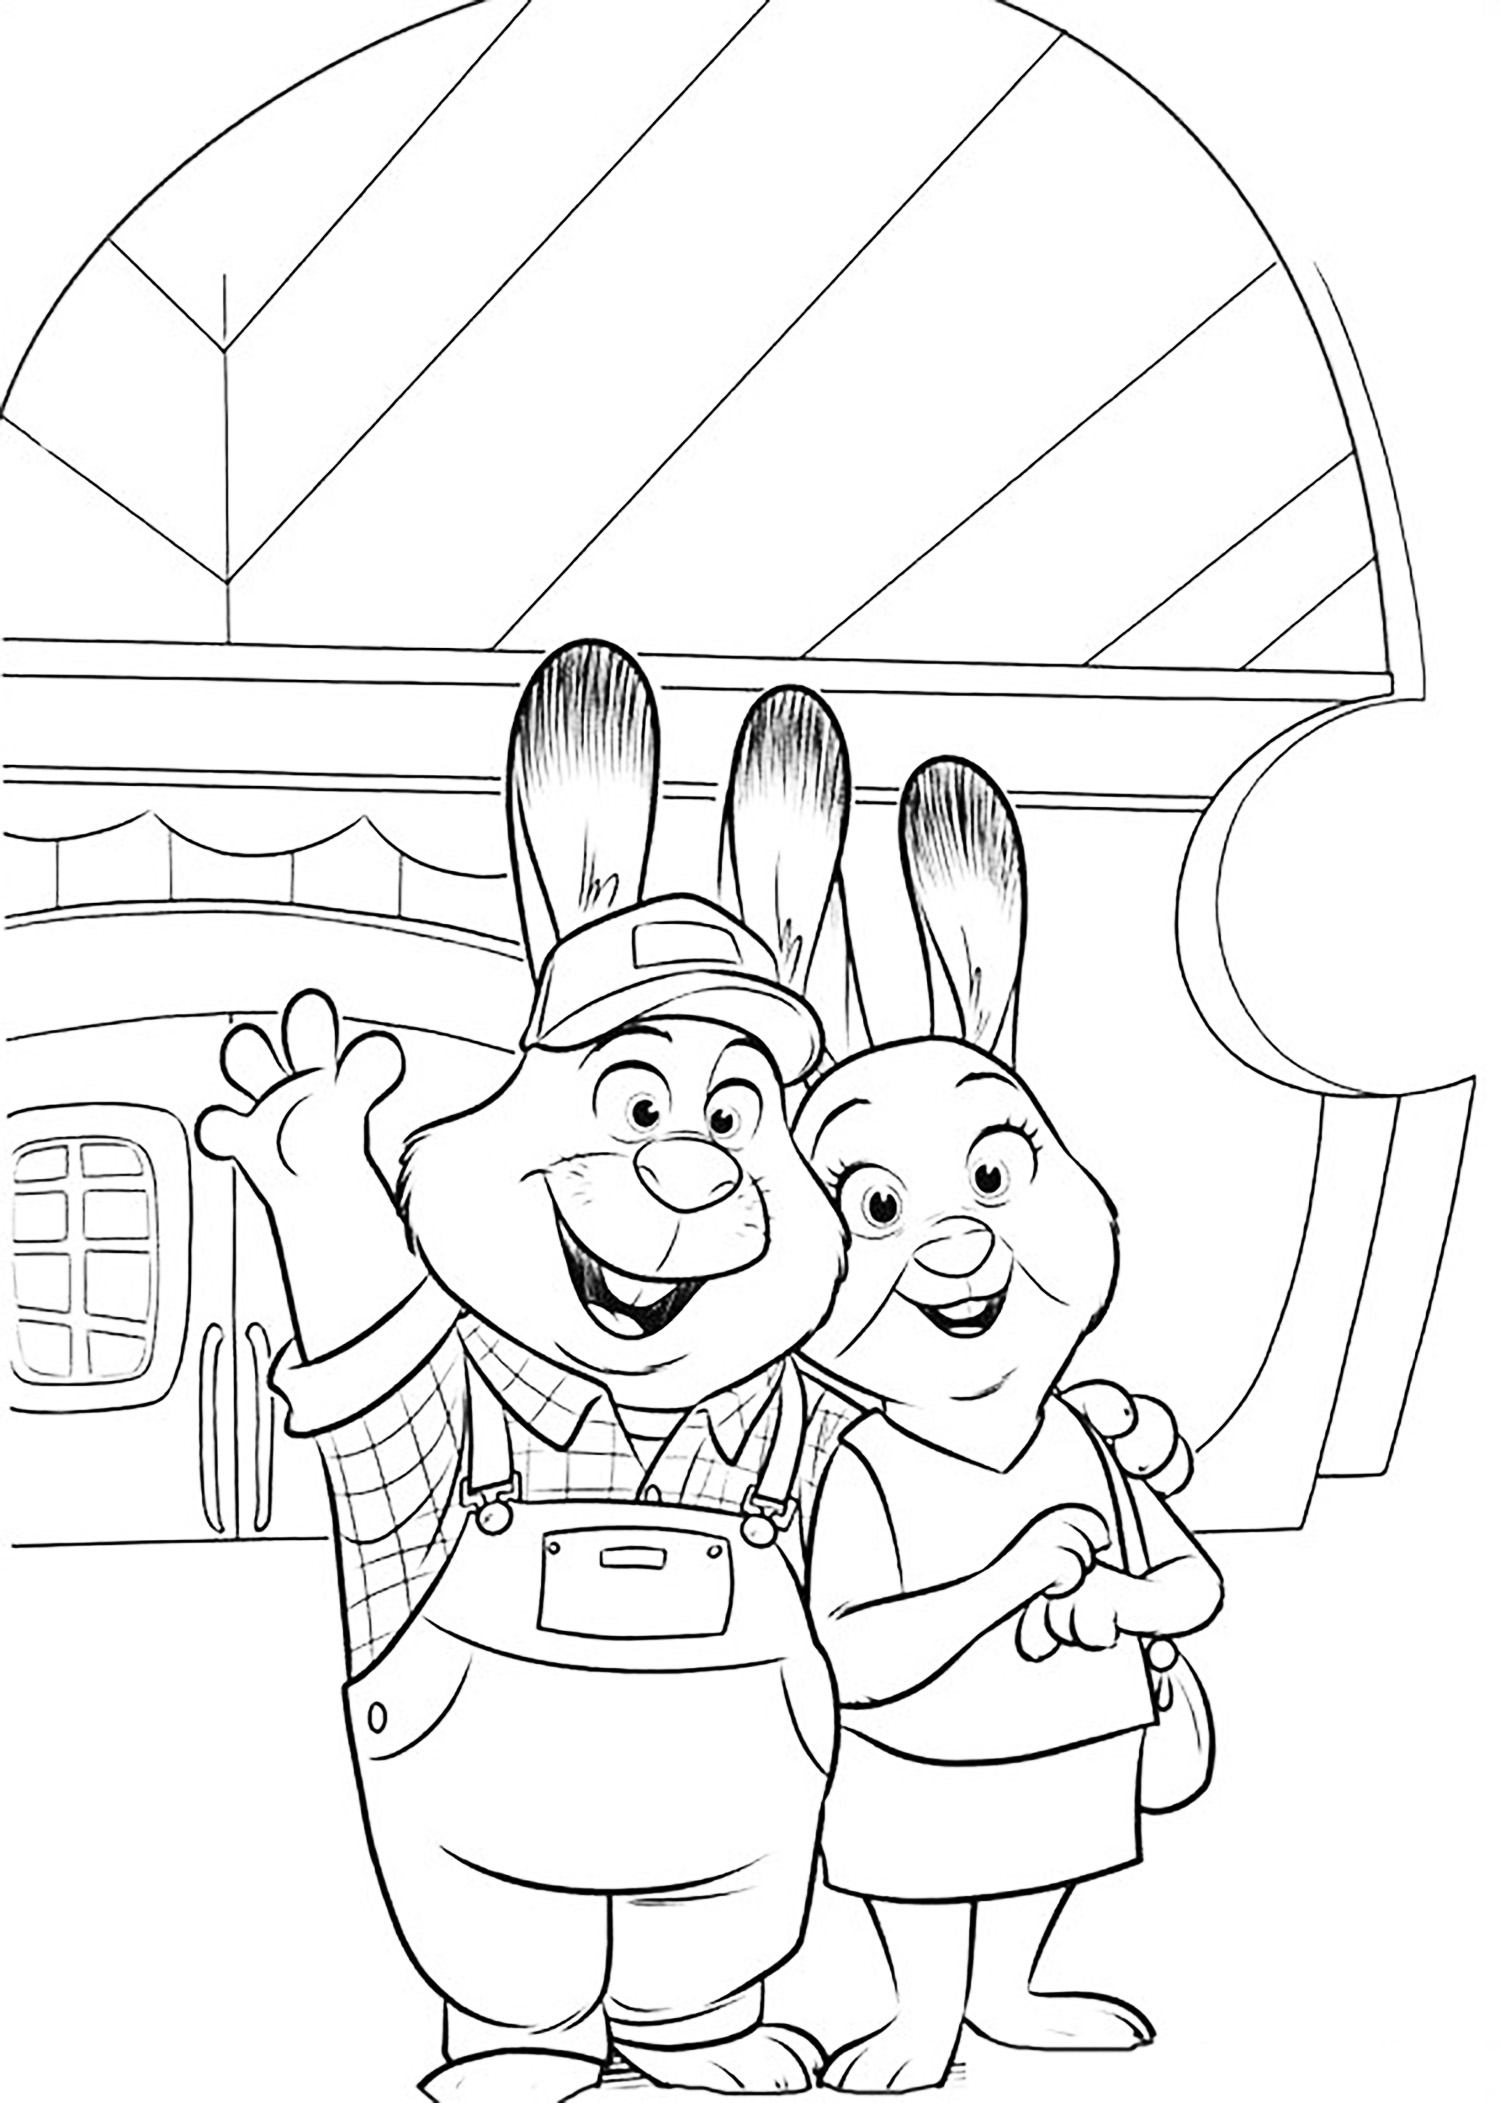 Les parents de la lapine Judy !